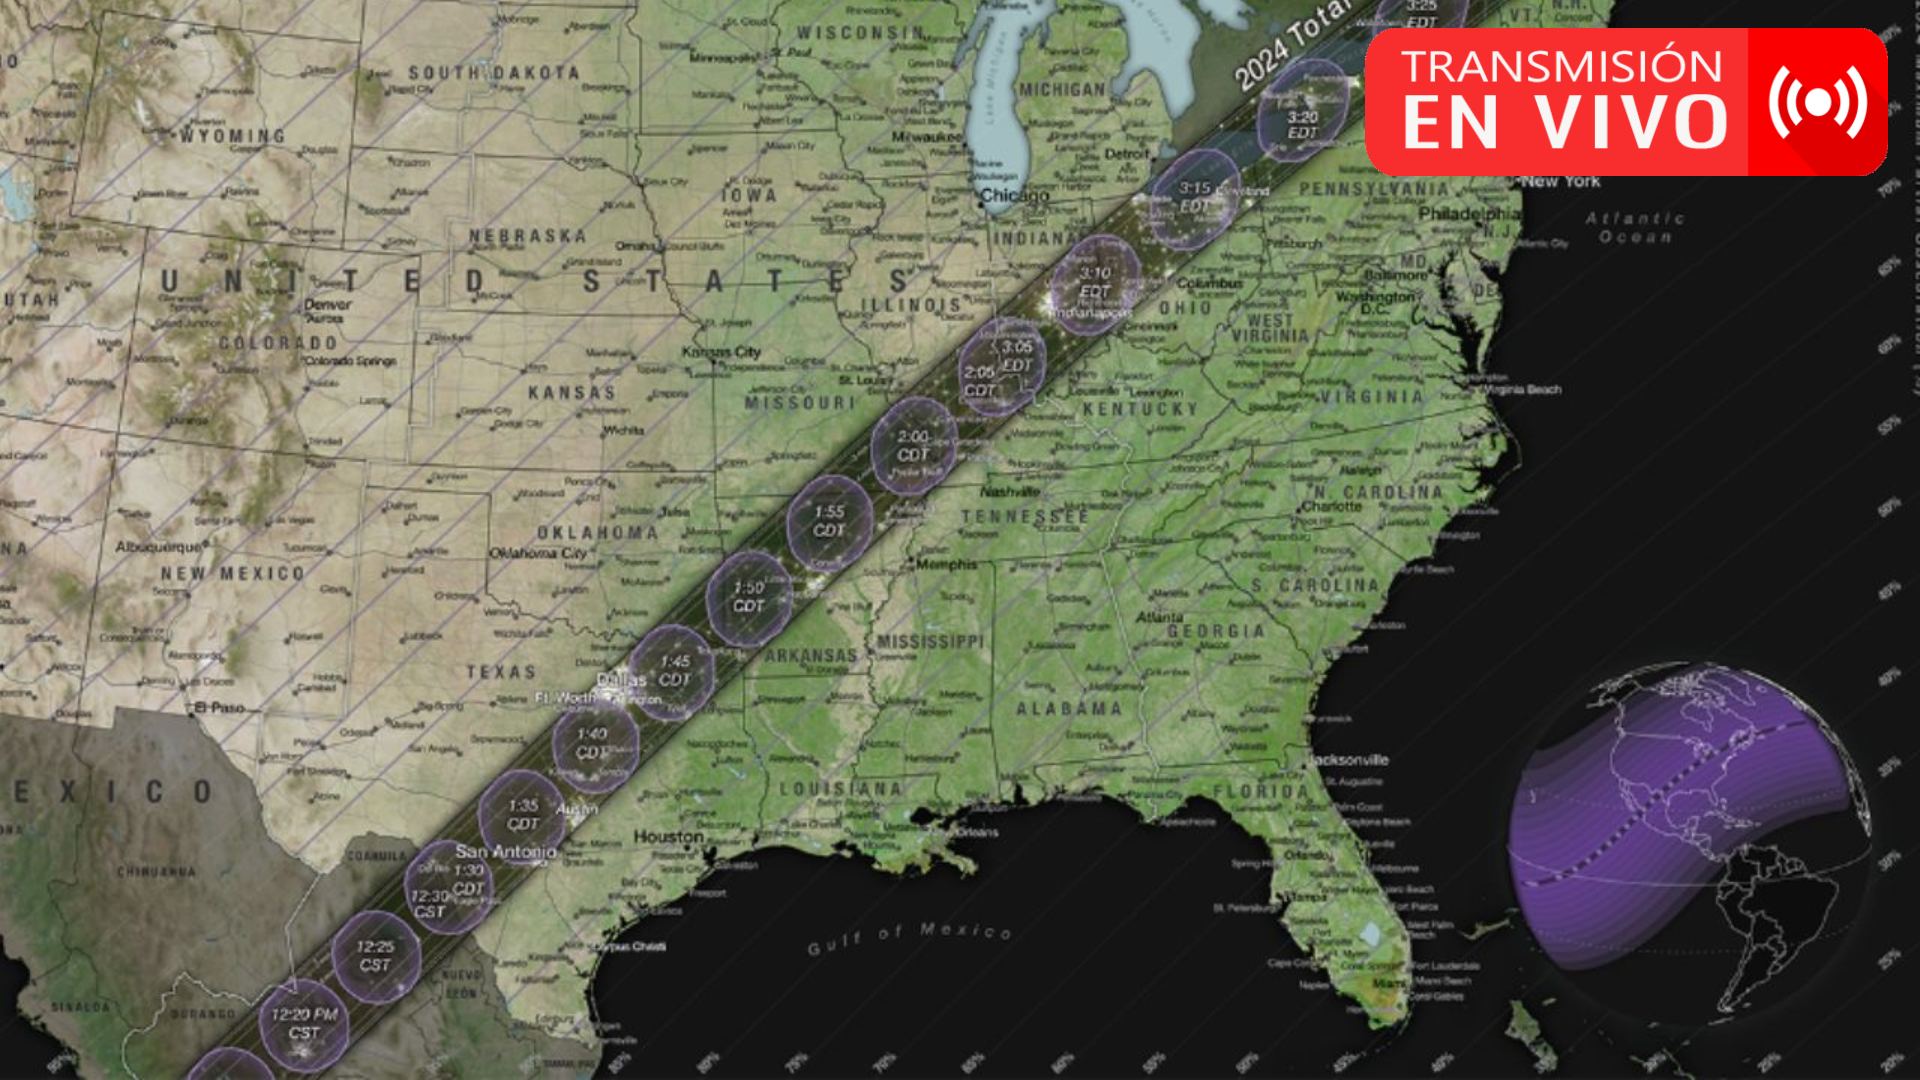 EN VIVO🔴: Trayectoria del eclipse solar del 8 de abril